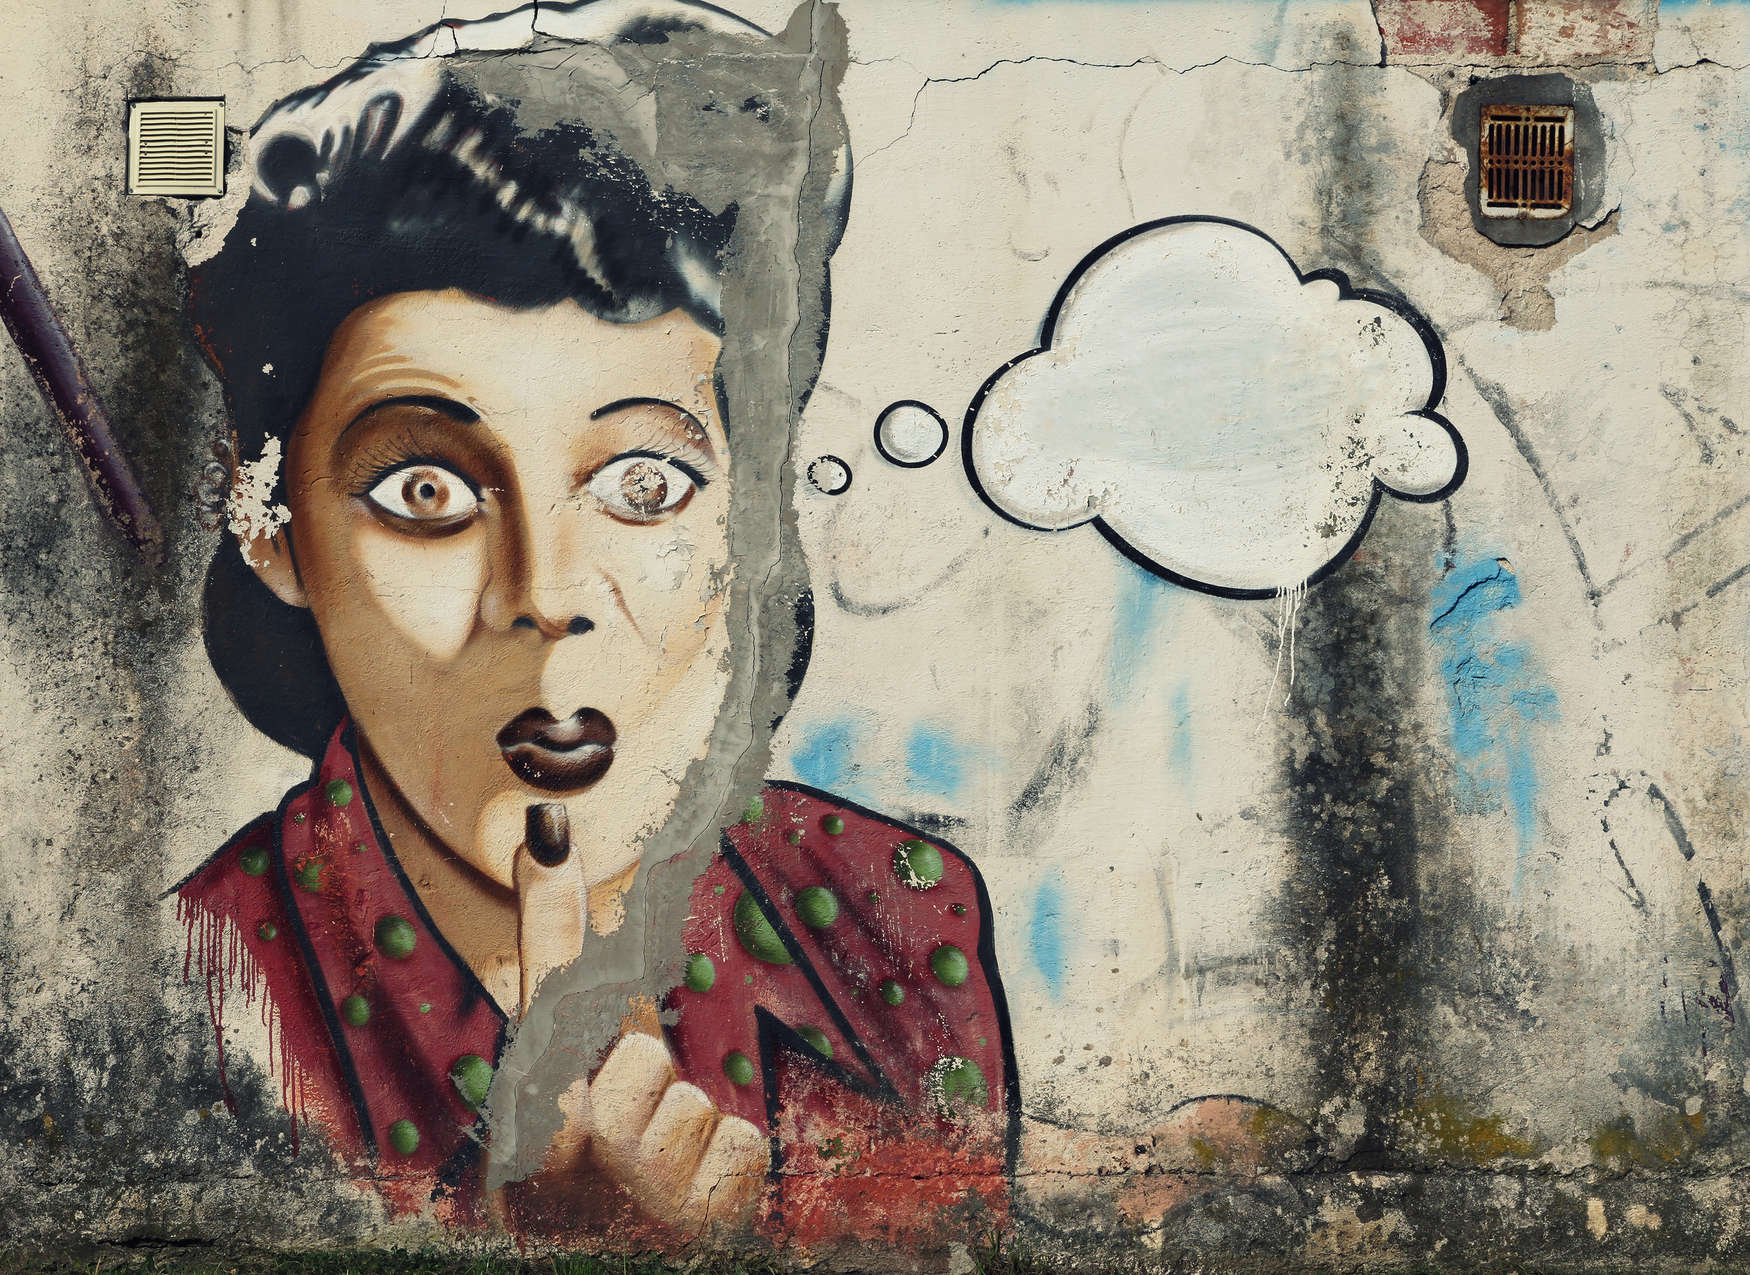             Digital behang Vrouw met gedachtebel als graffiti op stenen muur - Grijs, Rood, Wit
        